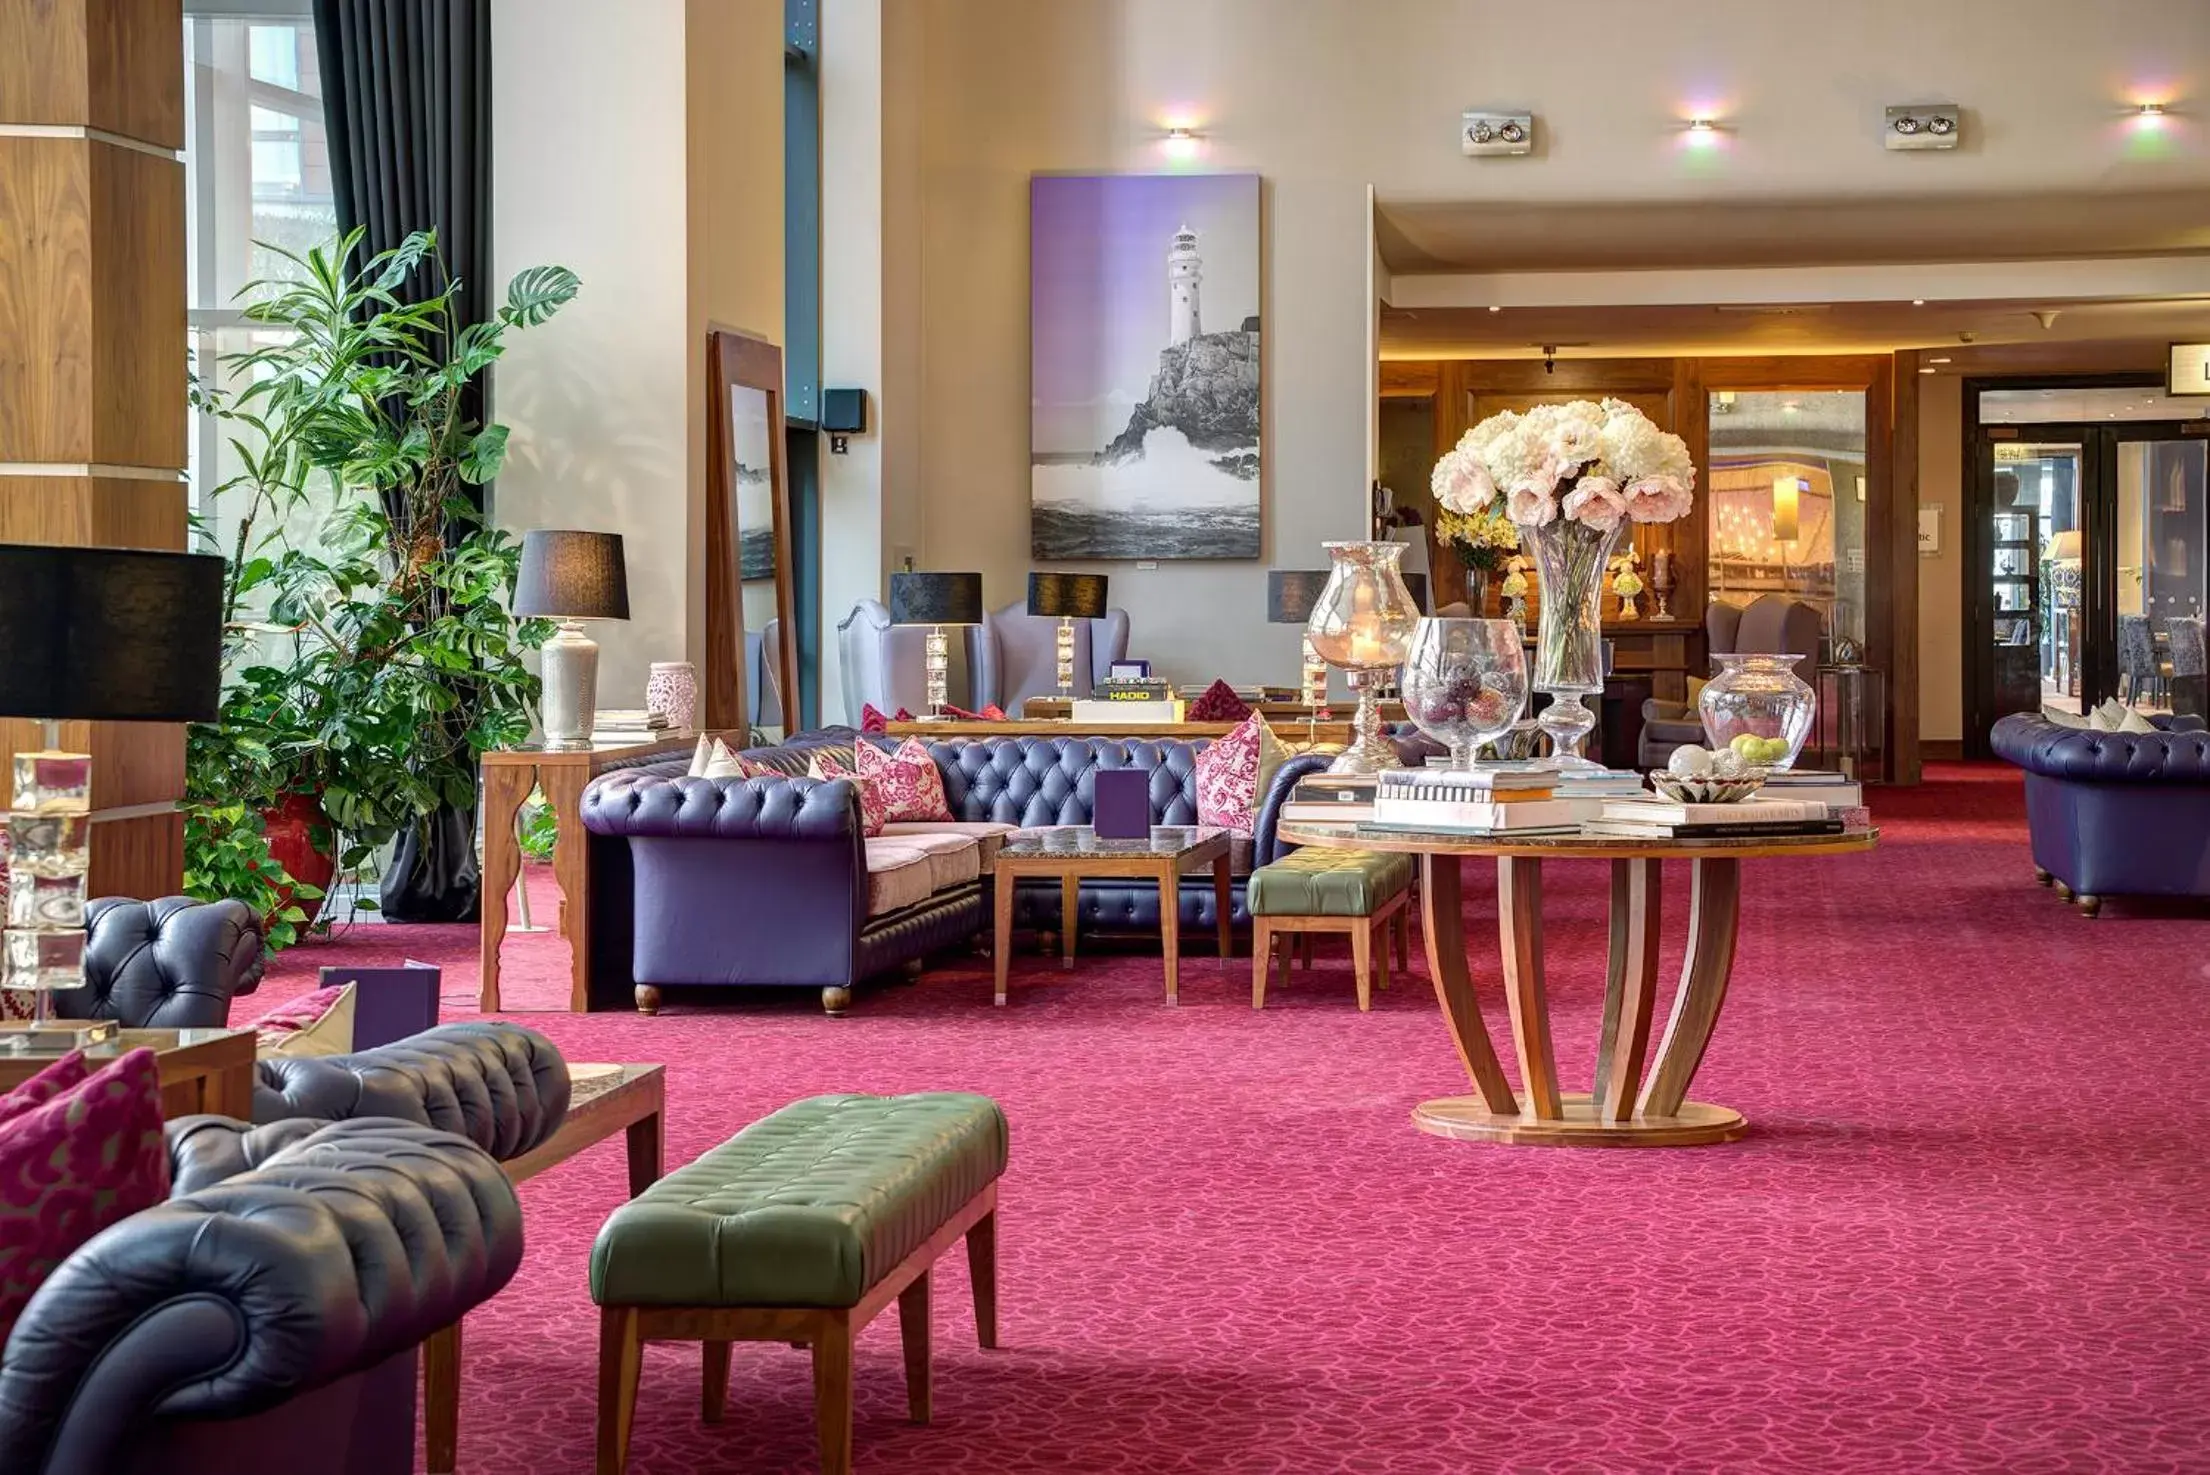 Lobby or reception in Cork International Hotel